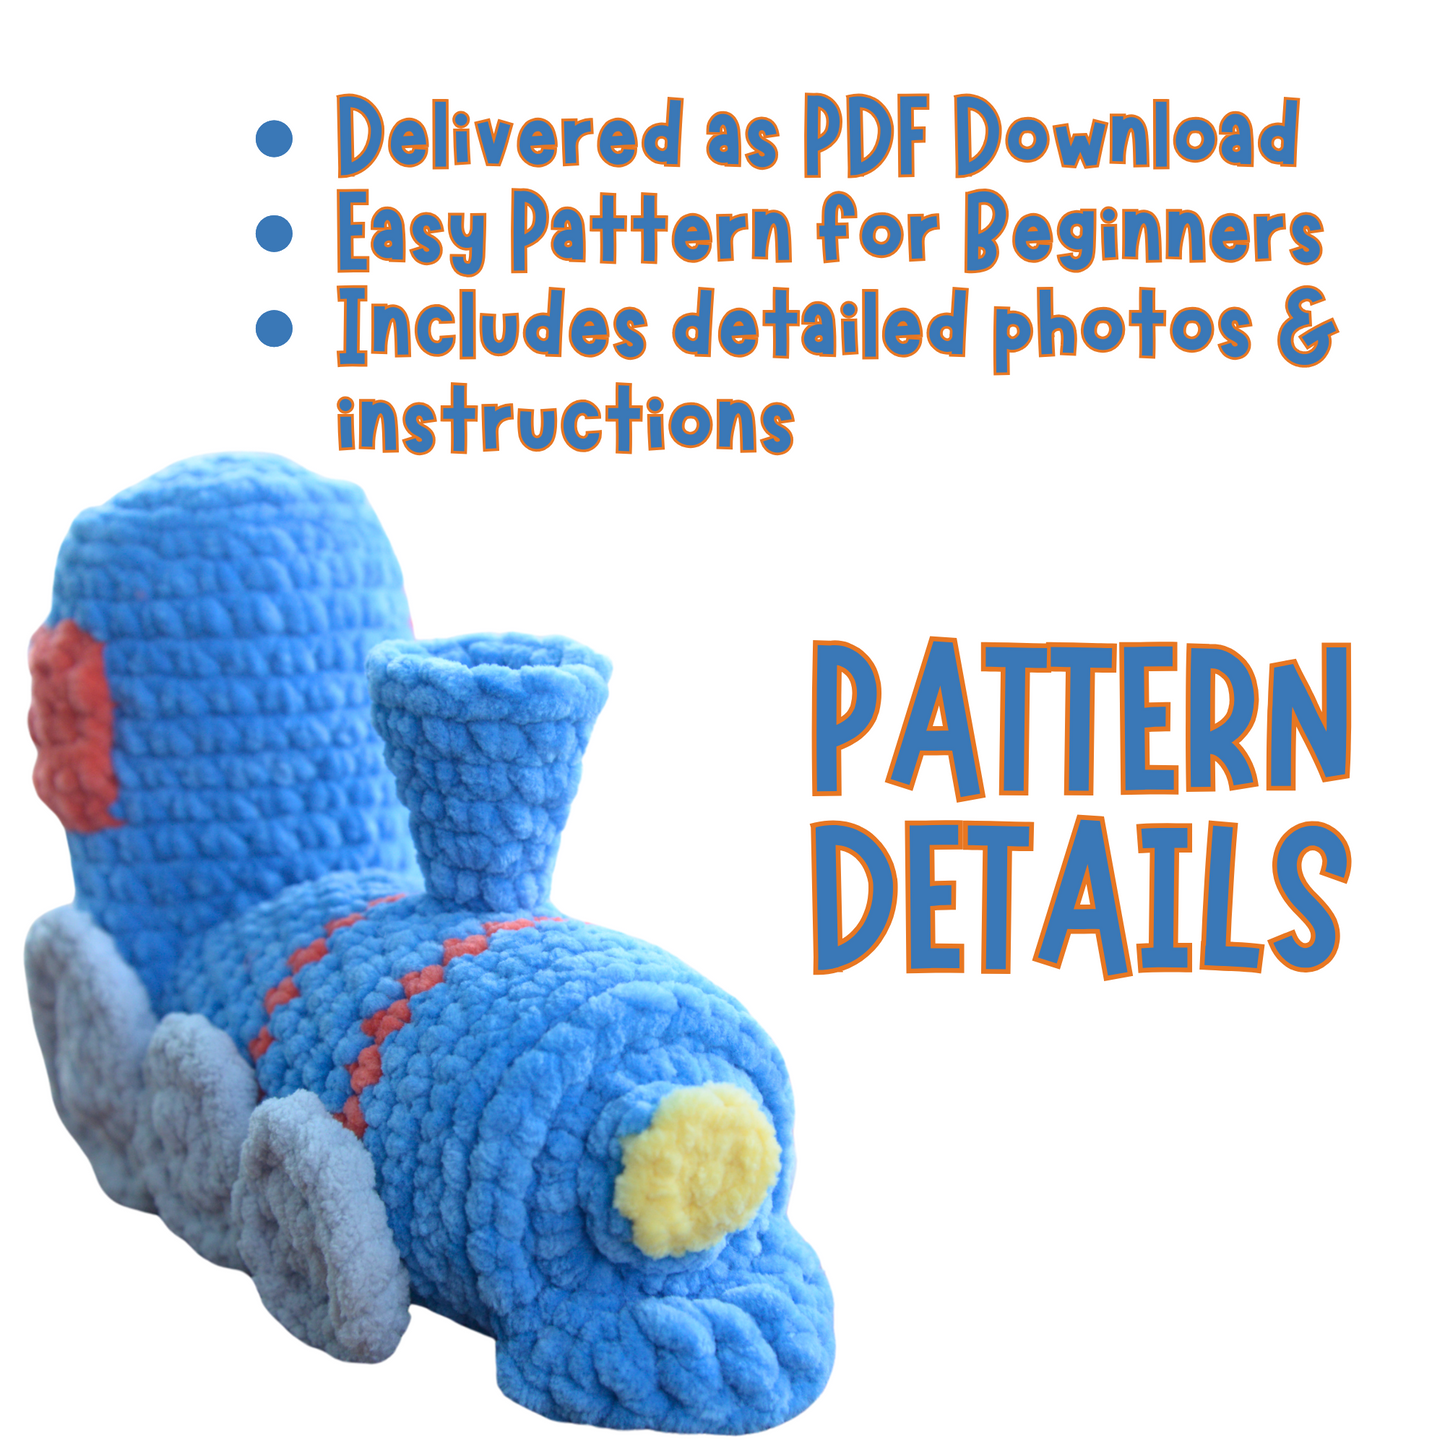 Crochet Train Pattern for Beginners PDF Download